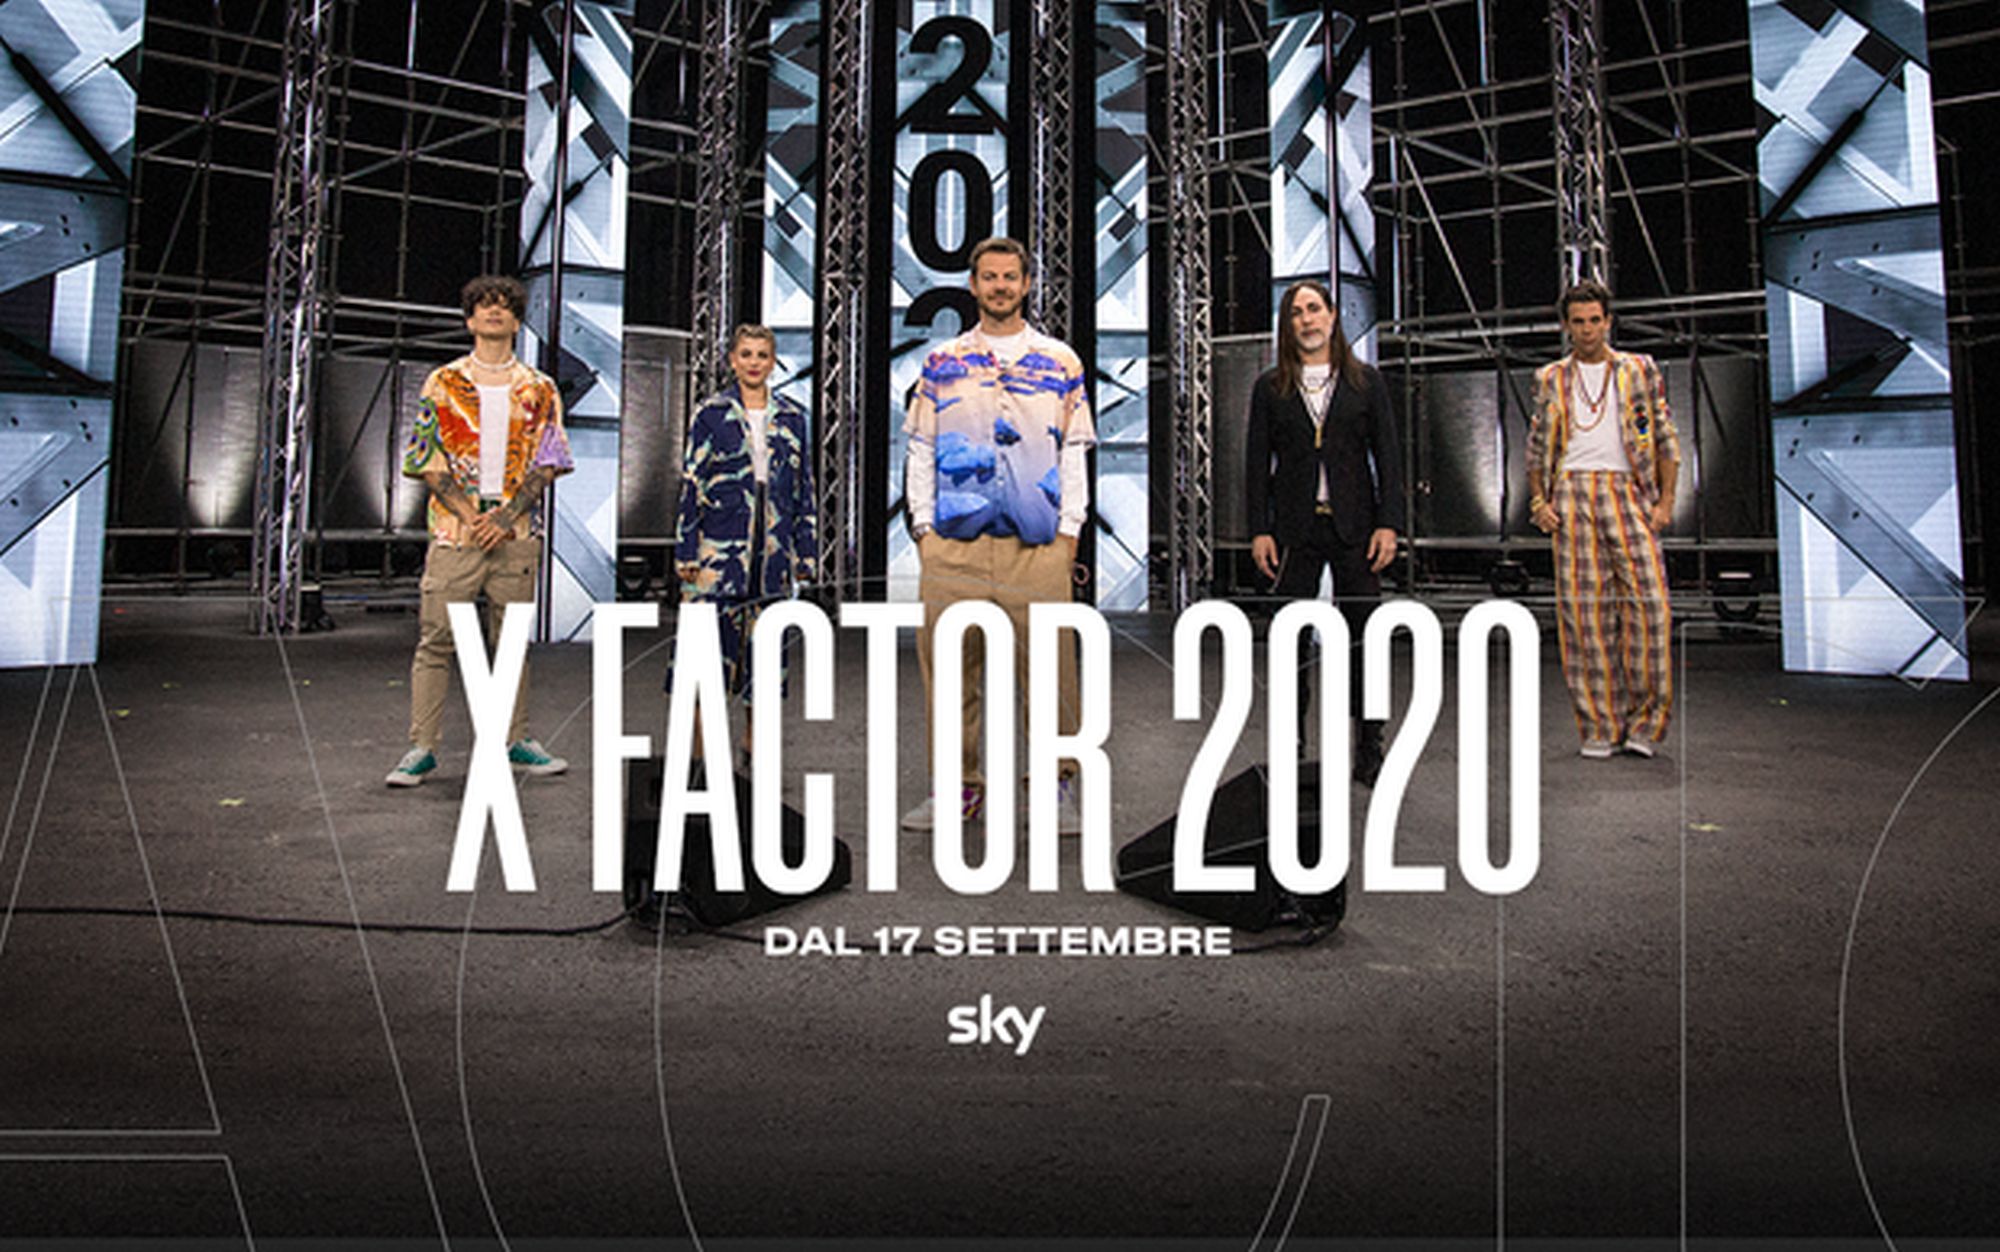 Audizioni X Factor 2020 in streaming: dove vederle